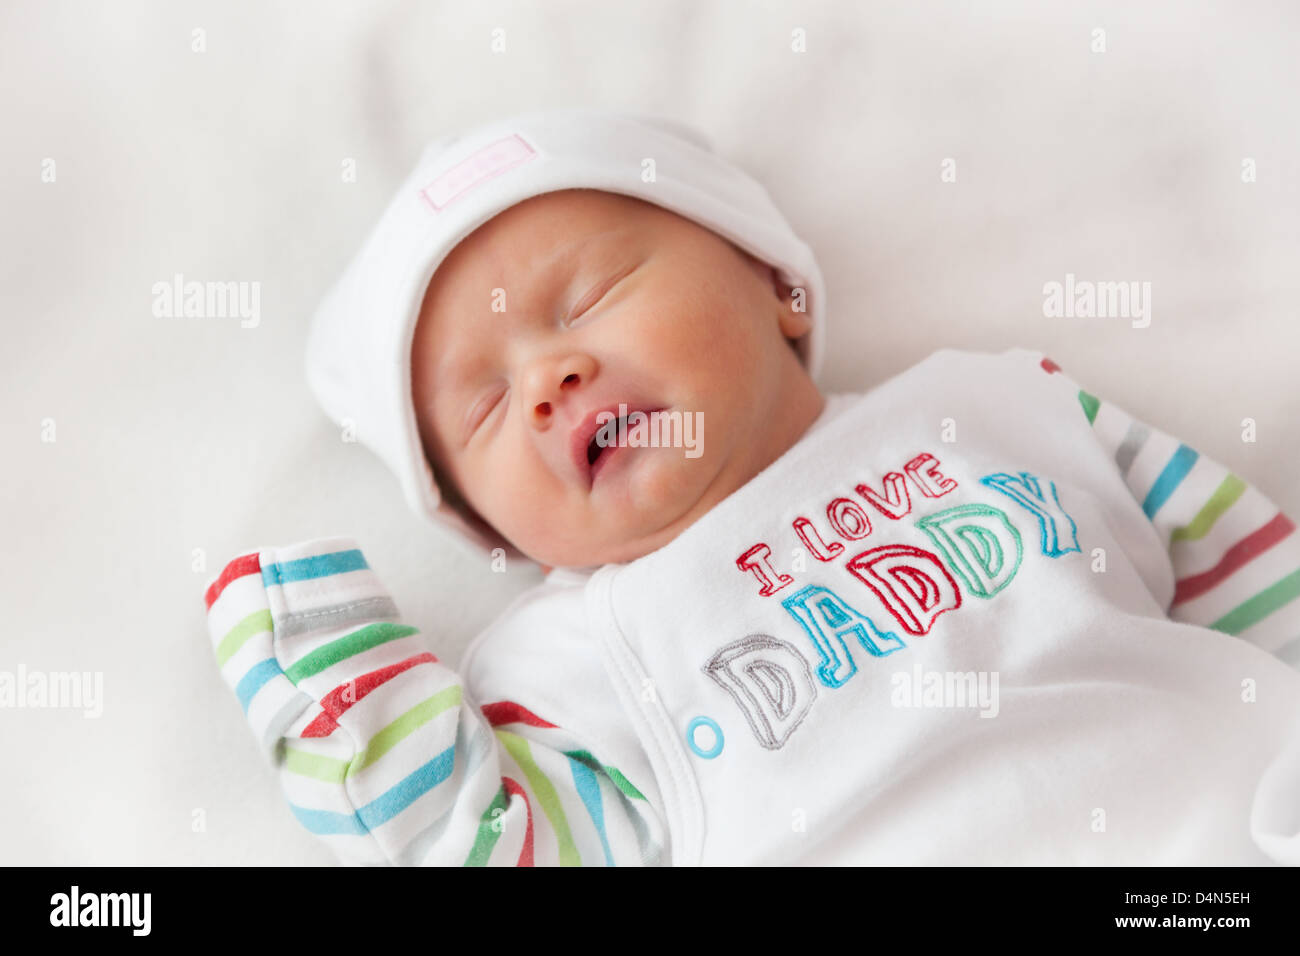 Sleeping Baby Girl 8 Jours Prises Dans Une Tres Douce Lumiere Une Tente Hat Indique Cute Et Lit Haut J Aime Papa Photo Stock Alamy